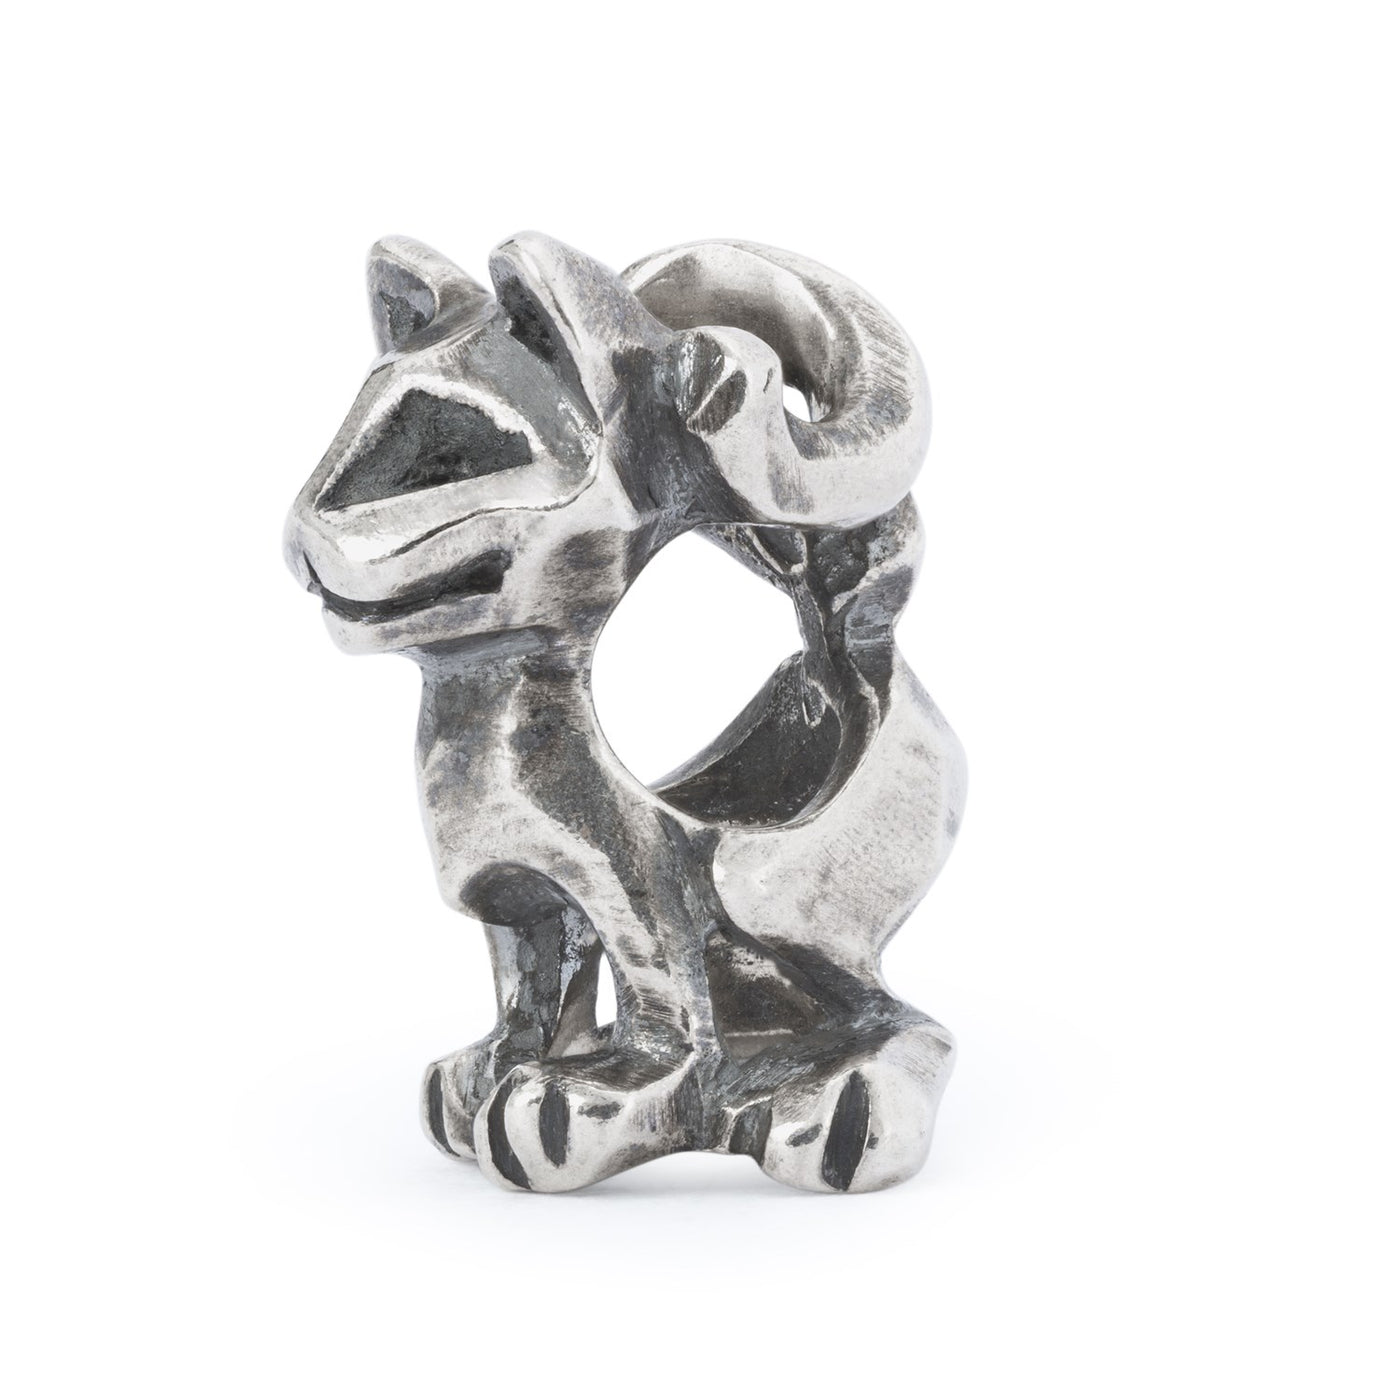 Little lionheart a Jewellery cat bead in silver.